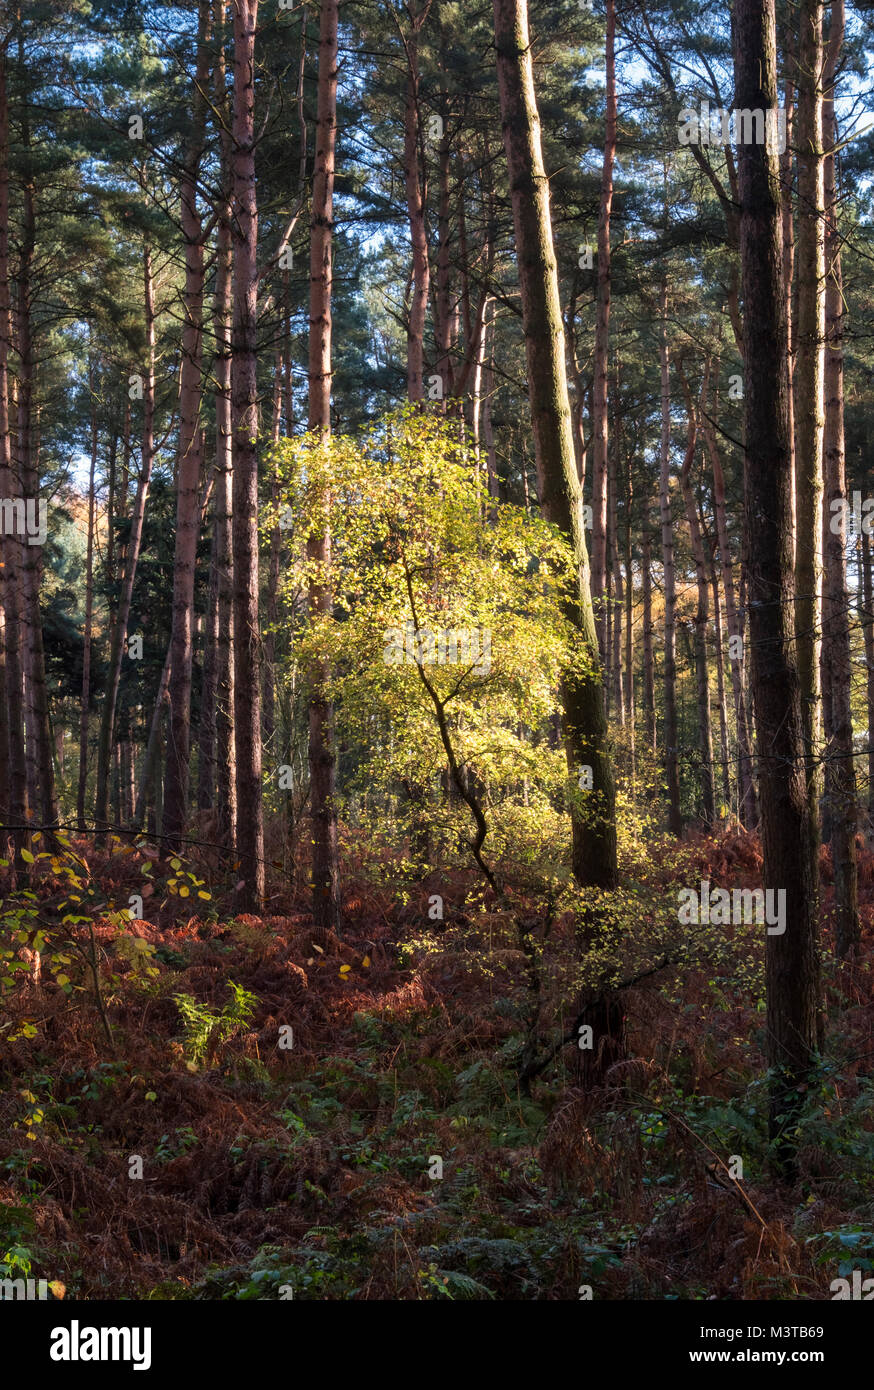 Feu de forêt, d'un arbrisseau de hêtre en automne, Delamere Forest, Delamere, Cheshire, Angleterre, Royaume-Uni Banque D'Images